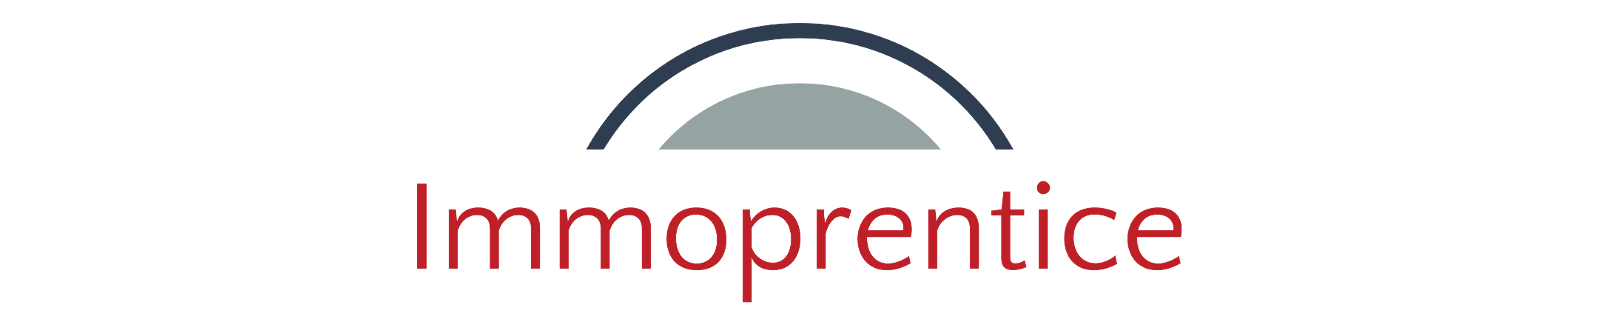 Logo von Immoprentice - Freiheit mit Immobilien | Dein Blog zum Thema Investition in Immobilien und Altersvorsorge / Altersabsicherung mit Immobilien.